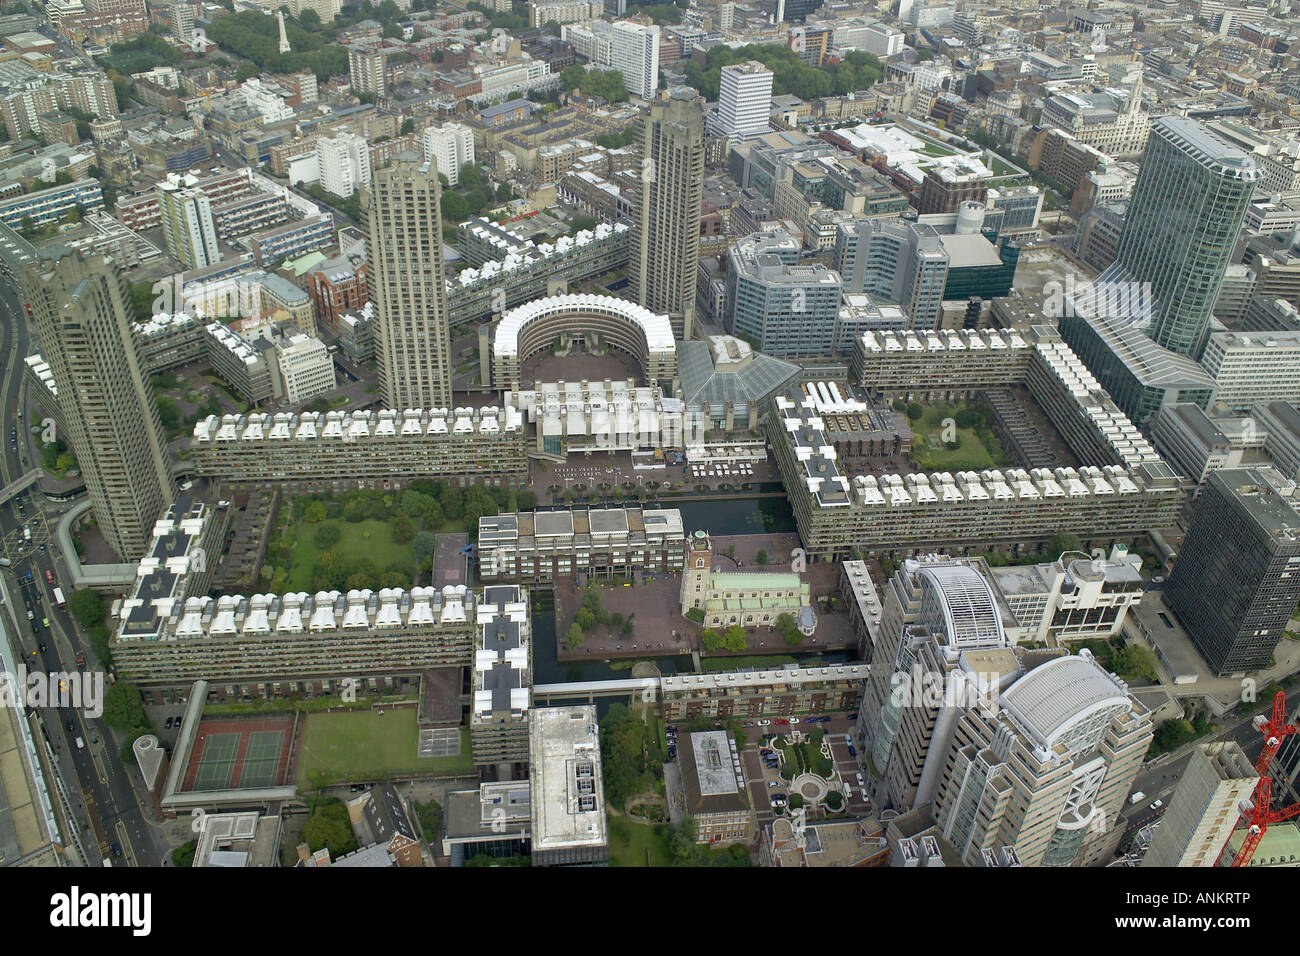 Vista aérea de London's Barbican Arts and Conference Center, con la Iglesia de St Giles y la ciudad de Londres, Escuela para niñas Foto de stock